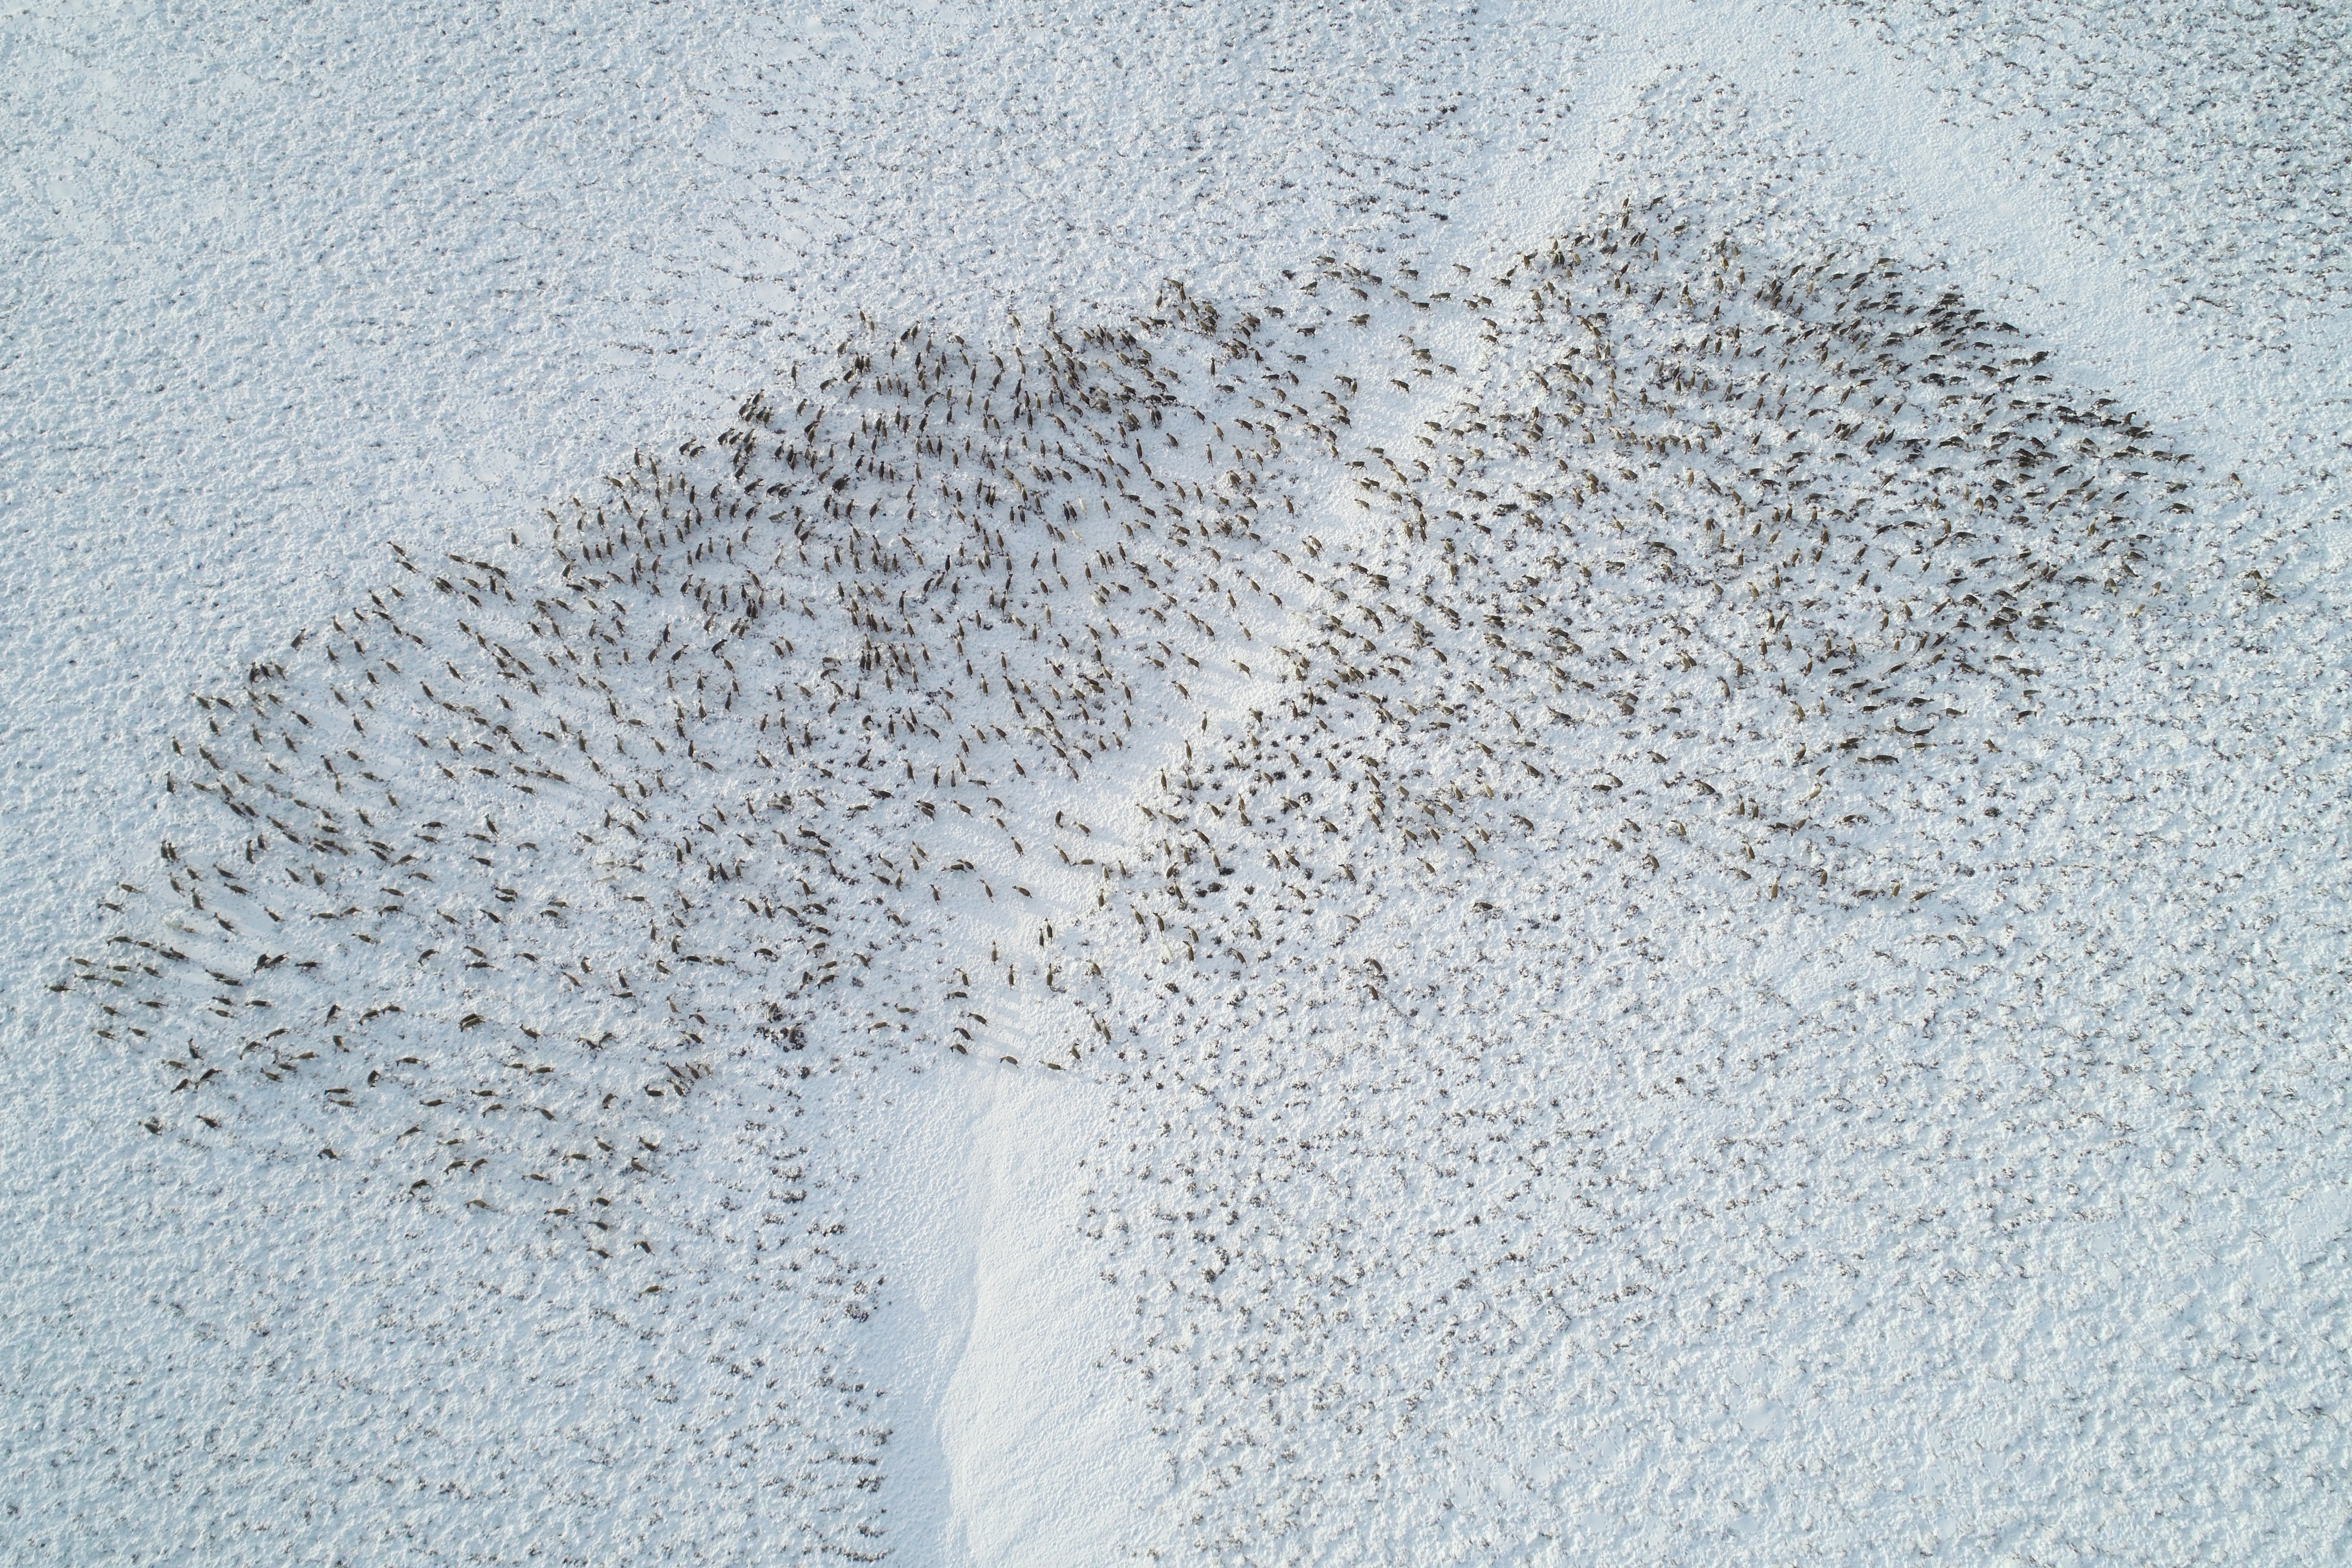 На острове Беринга зафиксировано самое крупное стадо оленей за все время наблюдений